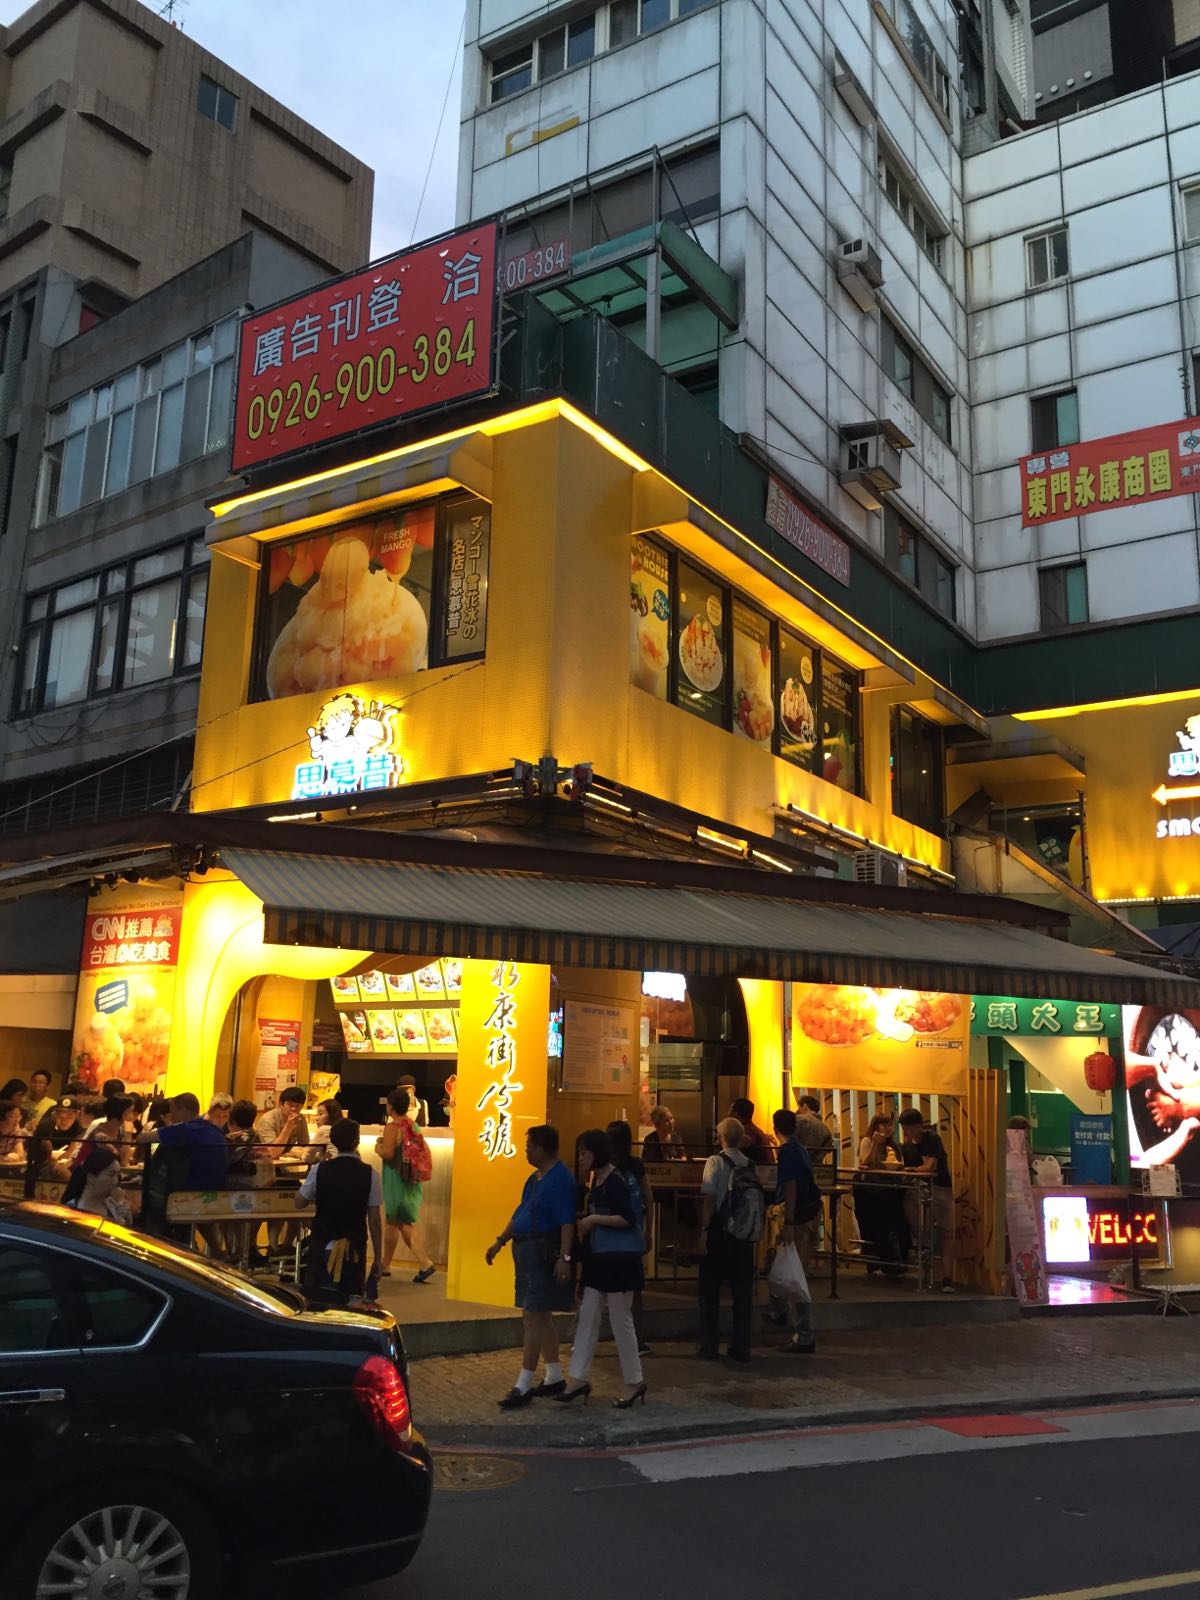 好吃，台湾冰品的味道基本都不会差，就是芒果有点酸，这家店在永康街地铁站